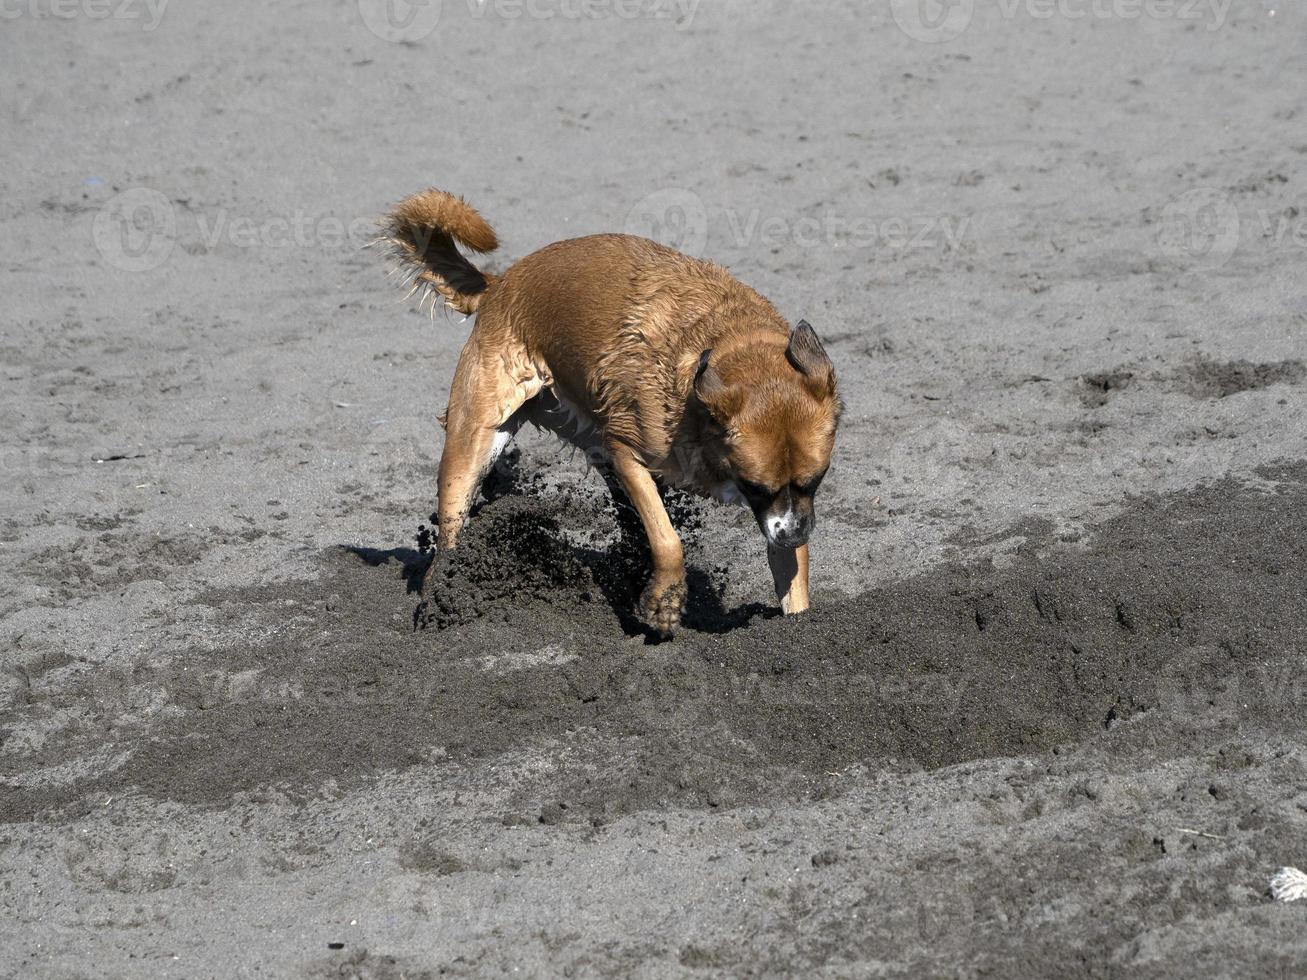 Lycklig hund cockerspaniel spaniel spelar på de strand foto